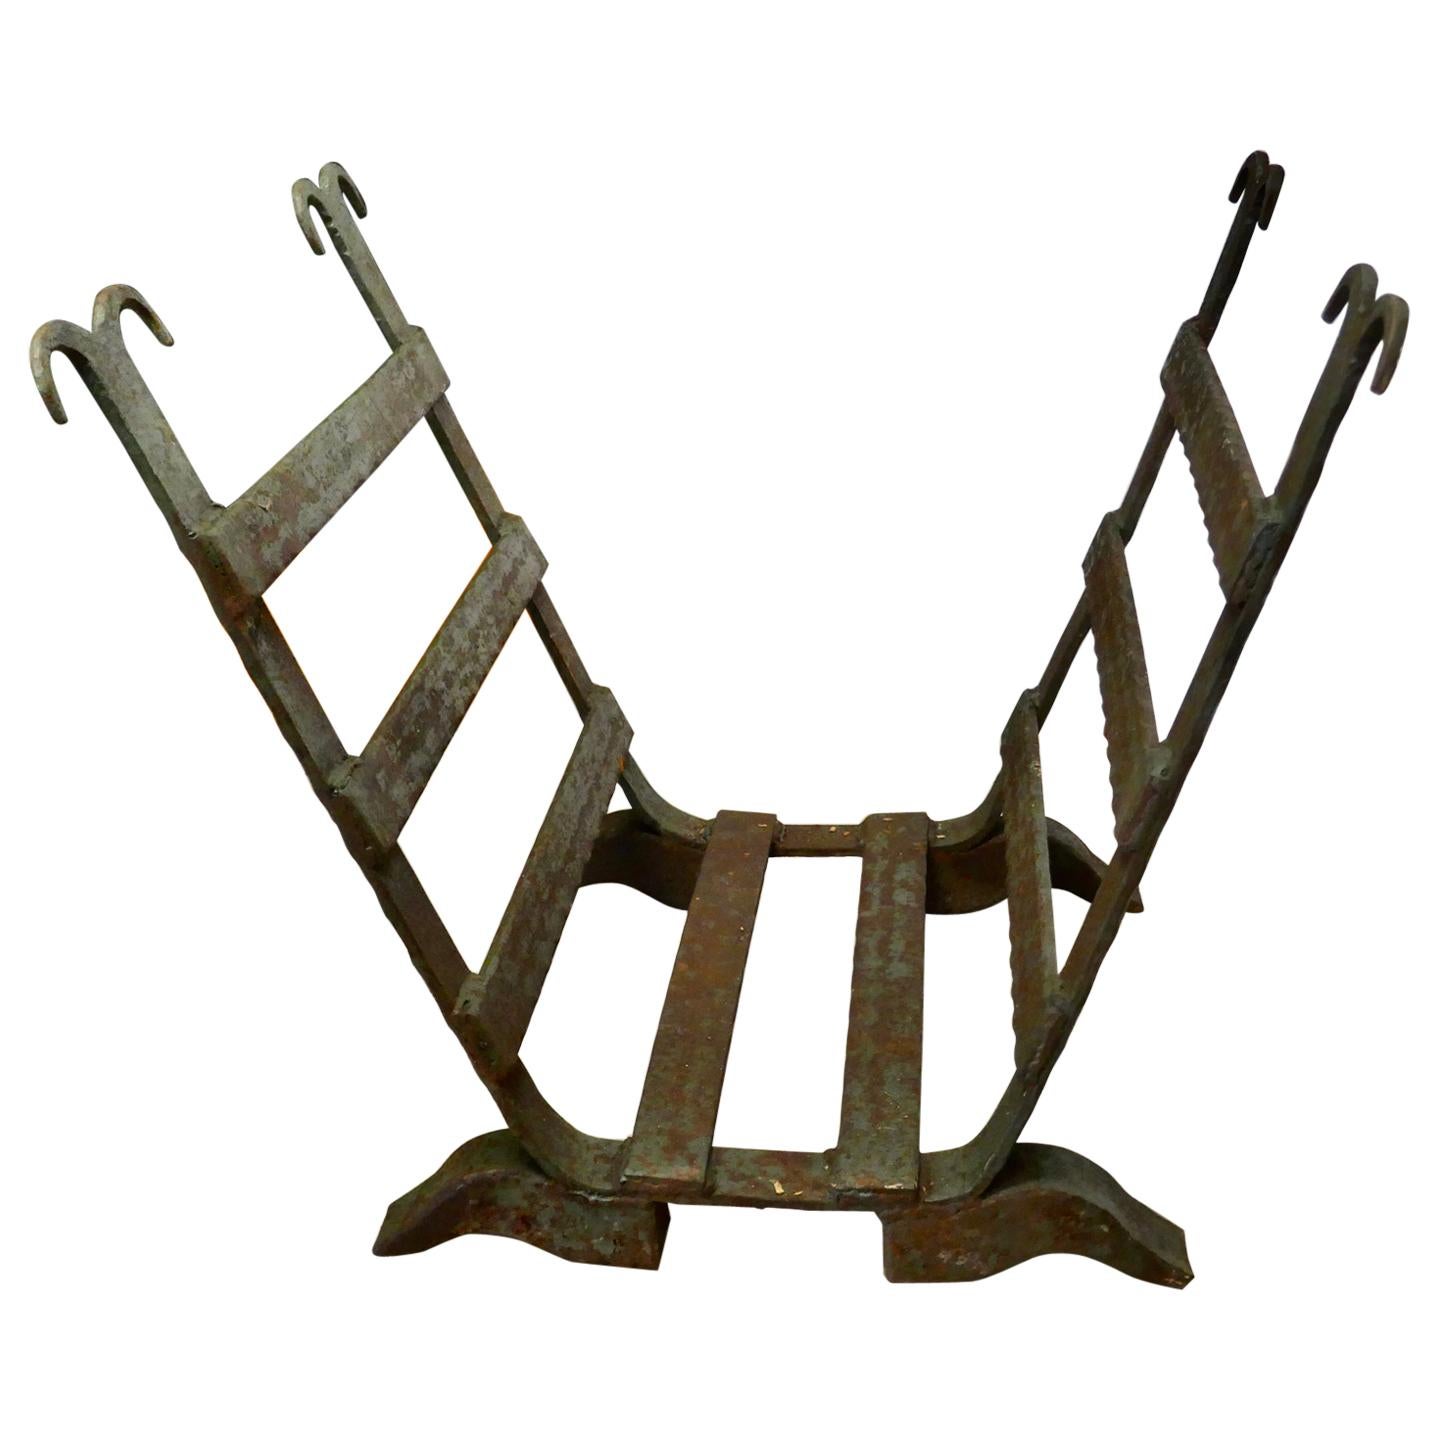 Porte-bûches en fer forgé Inglenook fabriqué par un forgeron du 19ème siècle